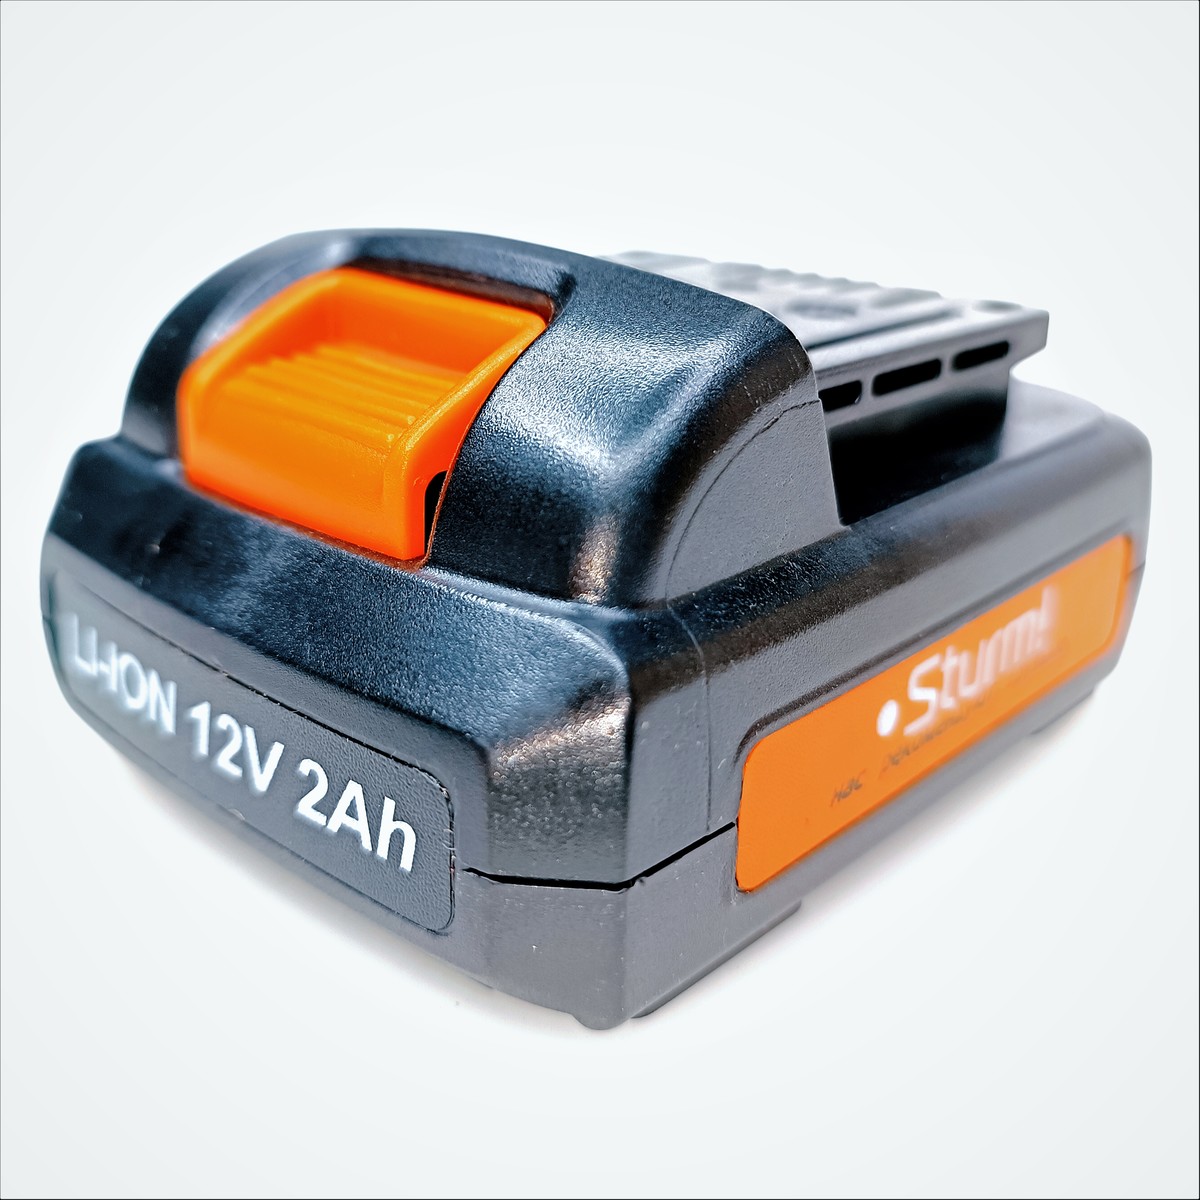 Аккумулятор Sturm CD3212L.v2.1-A45 LiOn 12V 2,0Ah, арт. ZAP68344